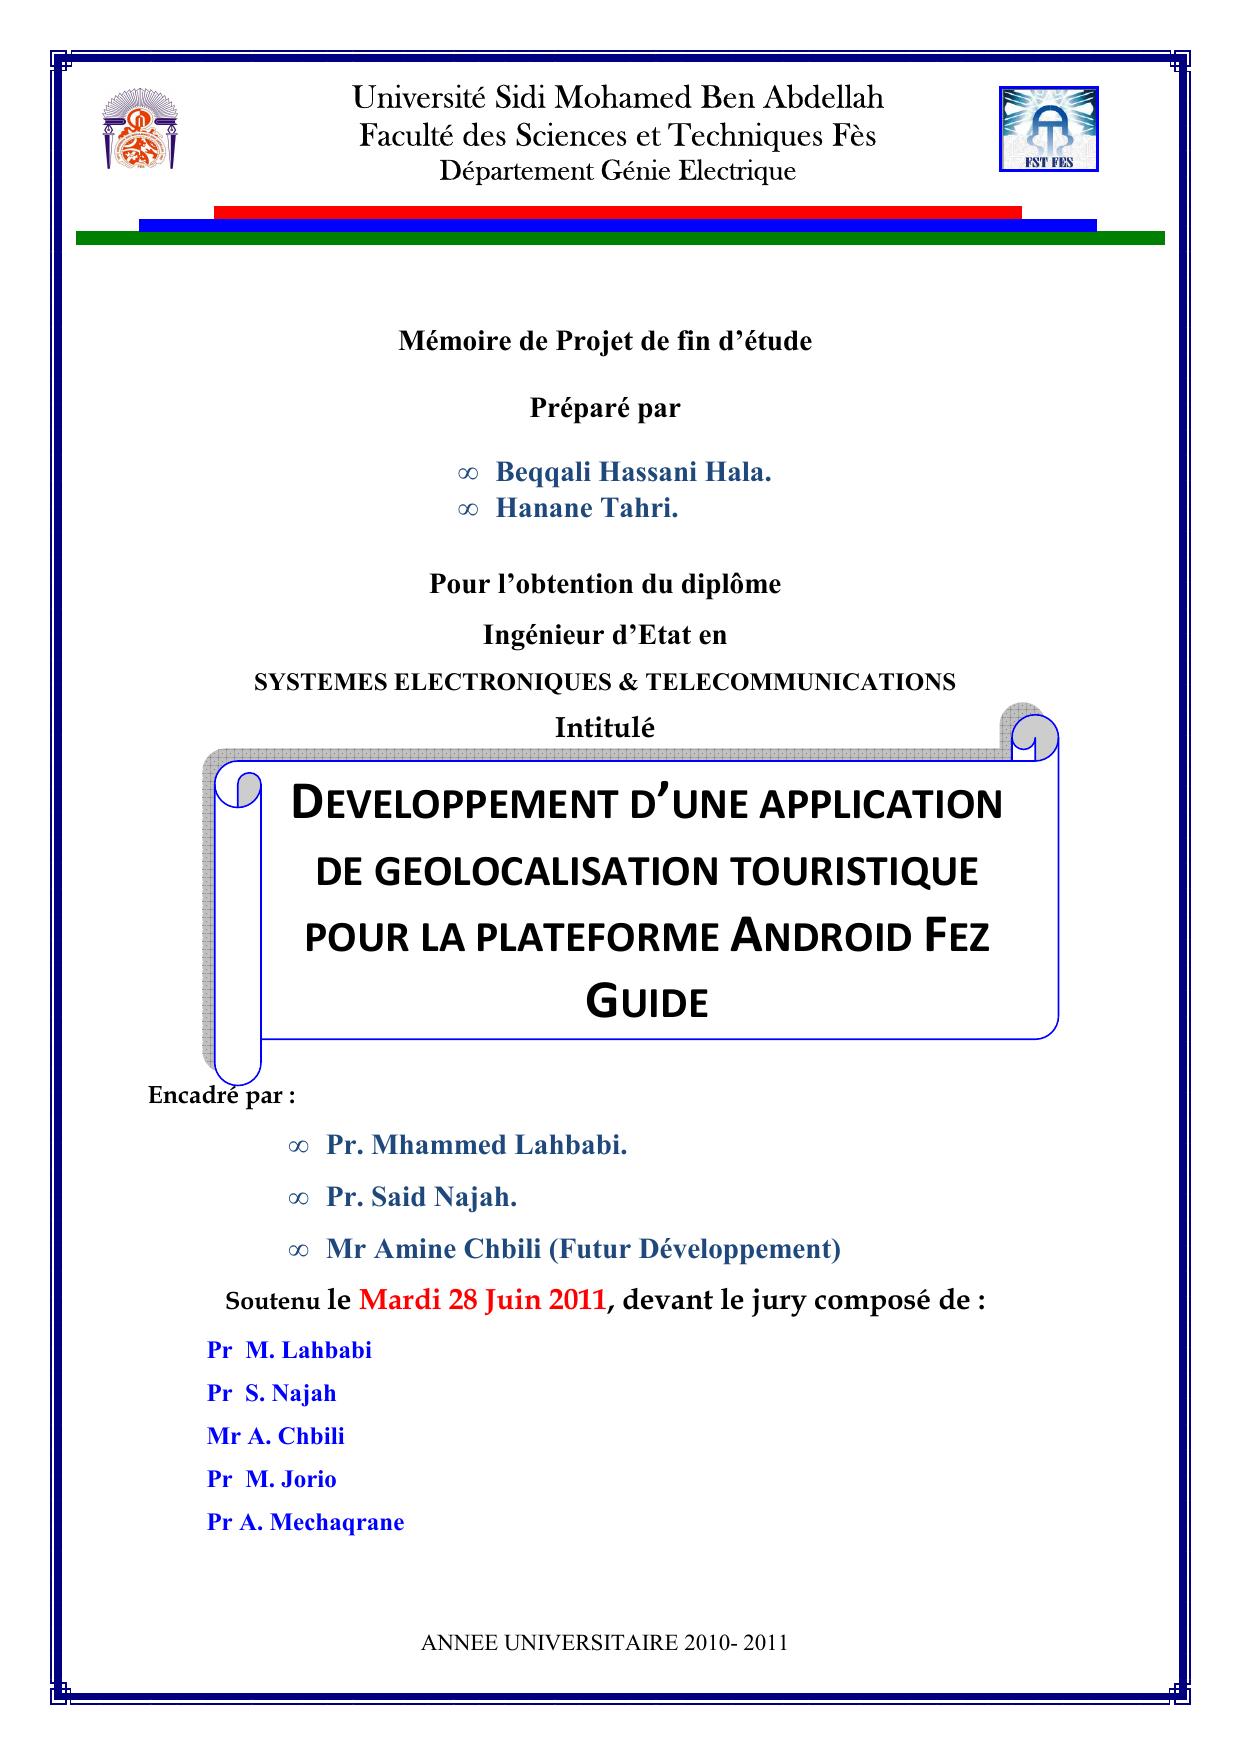 DEVELOPPEMENT D’UNE APPLICATION DE GEOLOCALISATION TOURISTIQUE POUR LA PLATEFORME ANDROID FEZ GUIDE